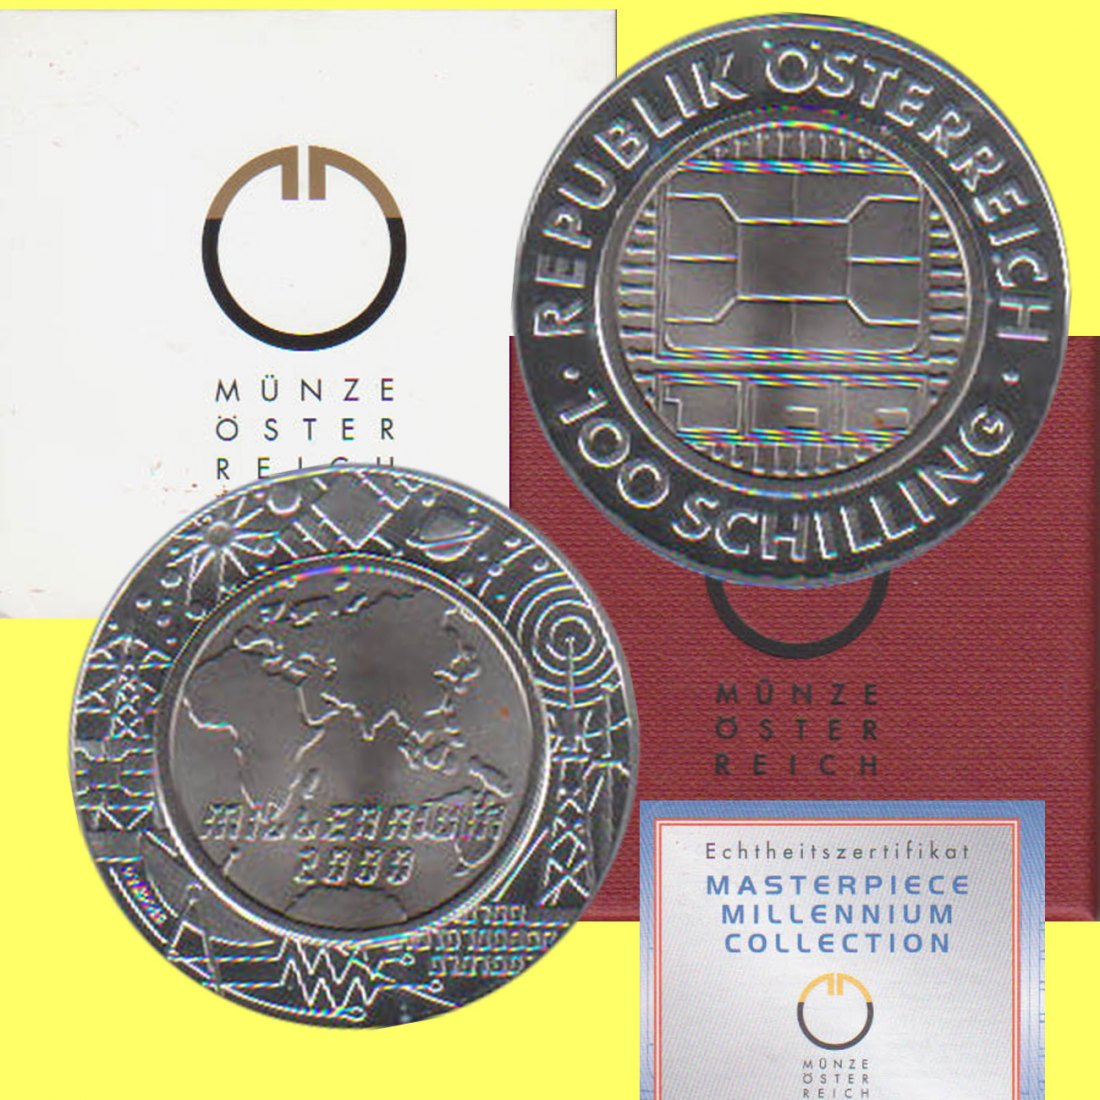  100-öS-Silbermünze Österreich *Communications* 2000 *PP* mit Titankern max 50.000St!   